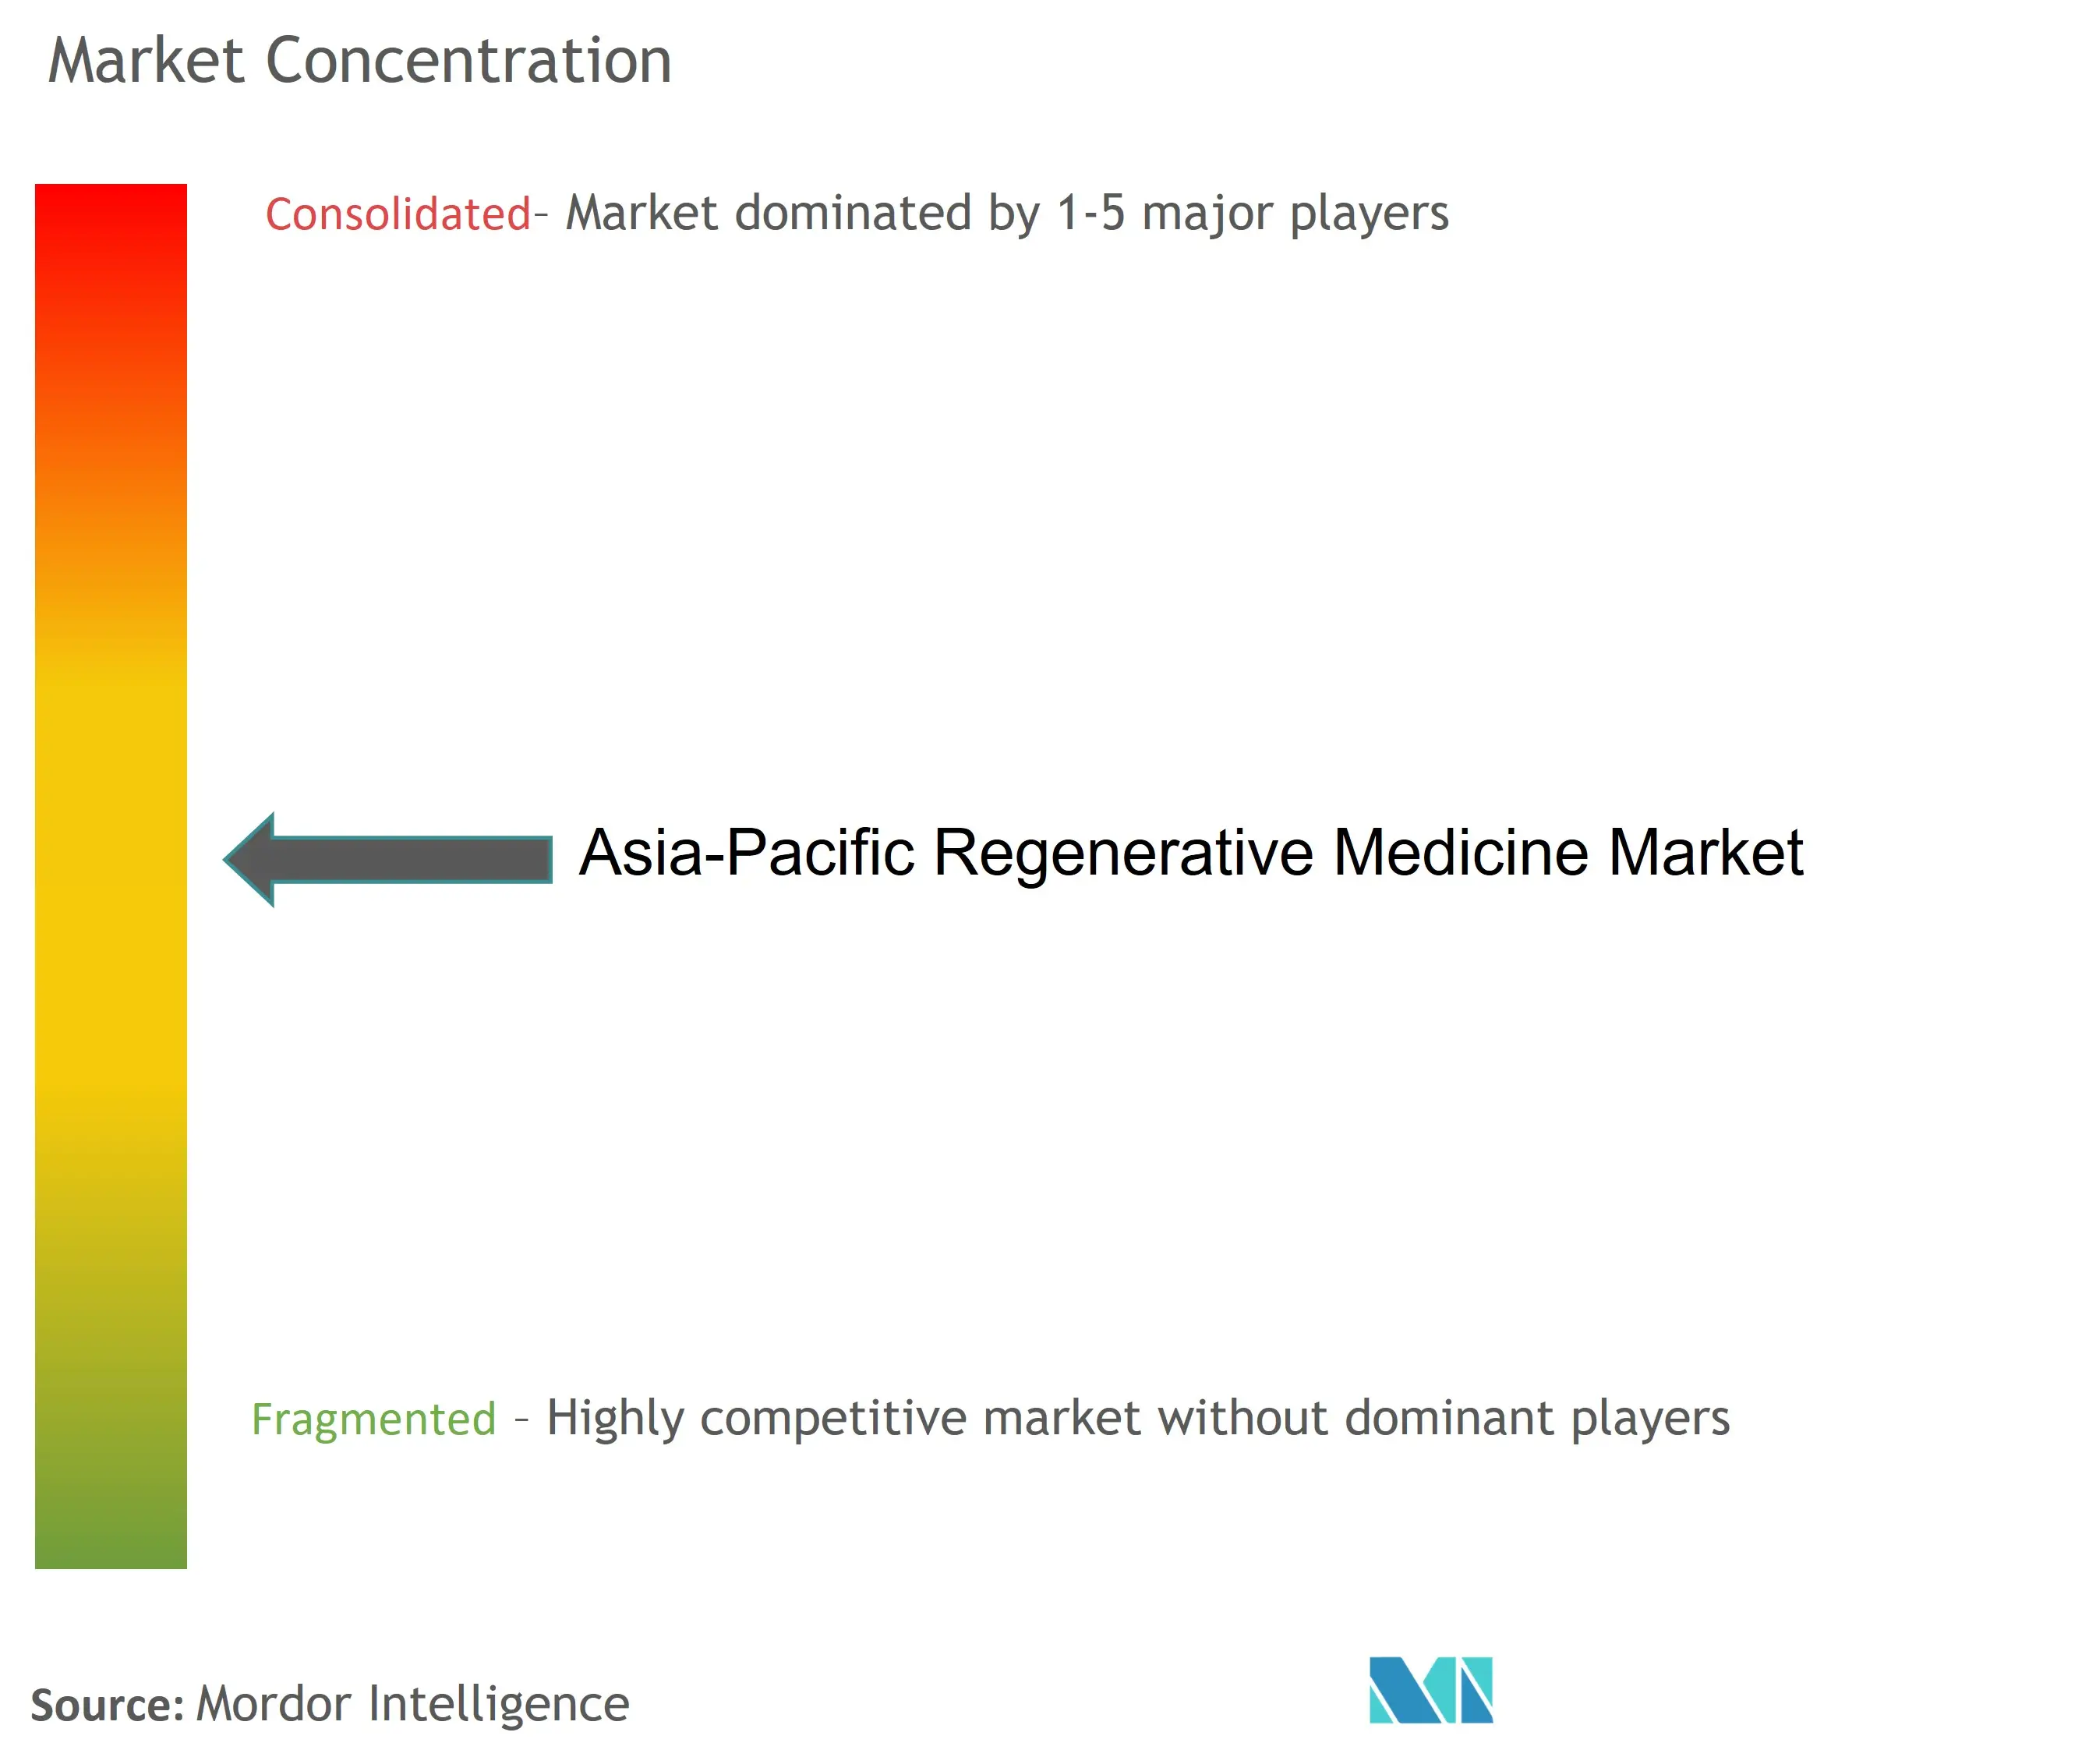 Médecine régénérative Asie-Pacifique.jpg